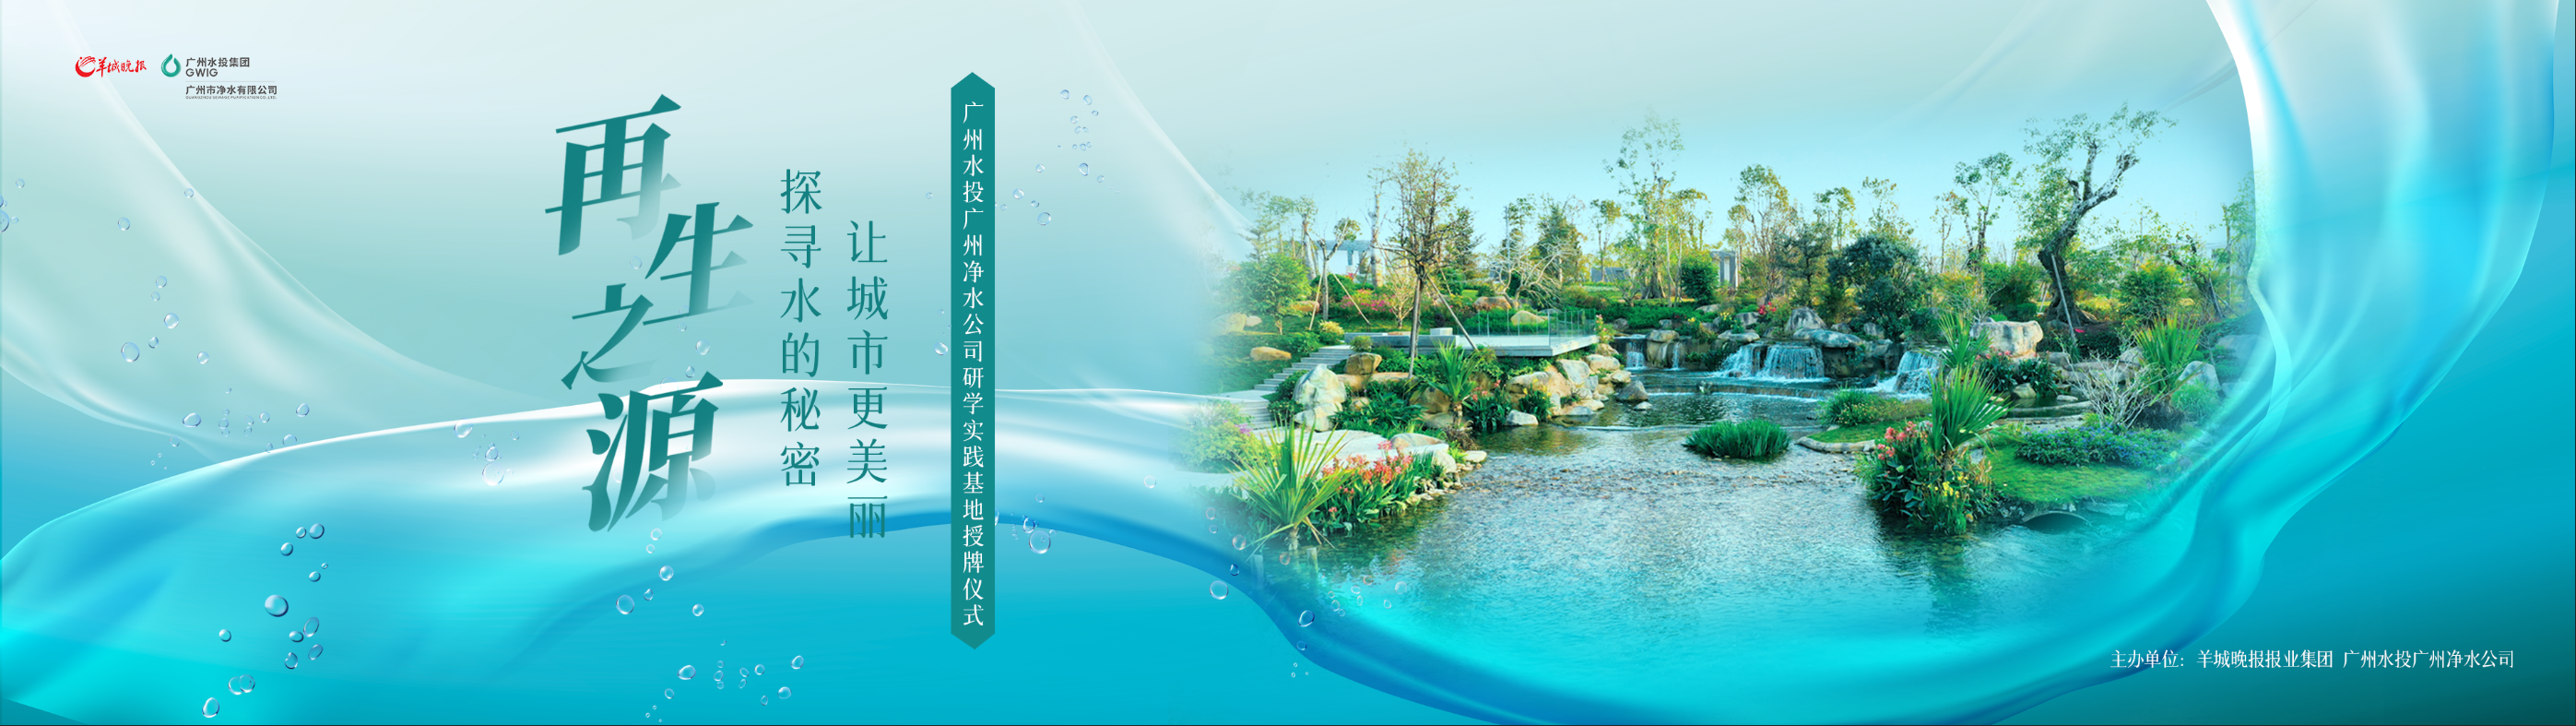 羊城晚报与广州水投净水公司共建研学实践基地，首场研学活动即将启动